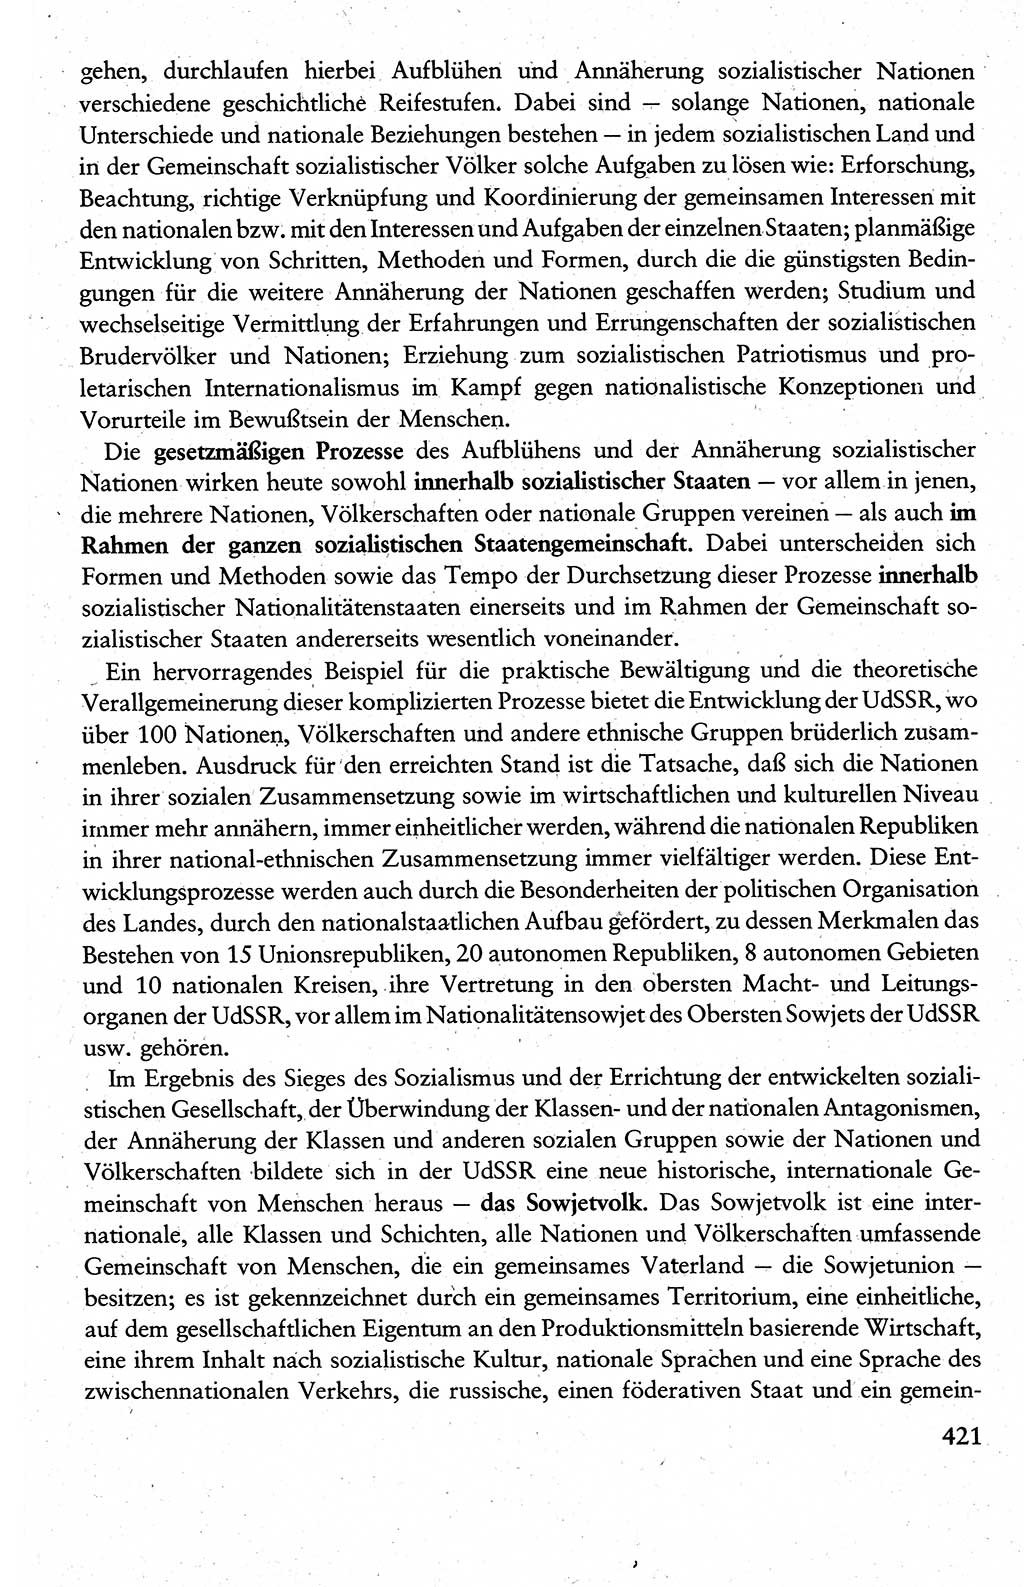 Wissenschaftlicher Kommunismus [Deutsche Demokratische Republik (DDR)], Lehrbuch für das marxistisch-leninistische Grundlagenstudium 1983, Seite 421 (Wiss. Komm. DDR Lb. 1983, S. 421)